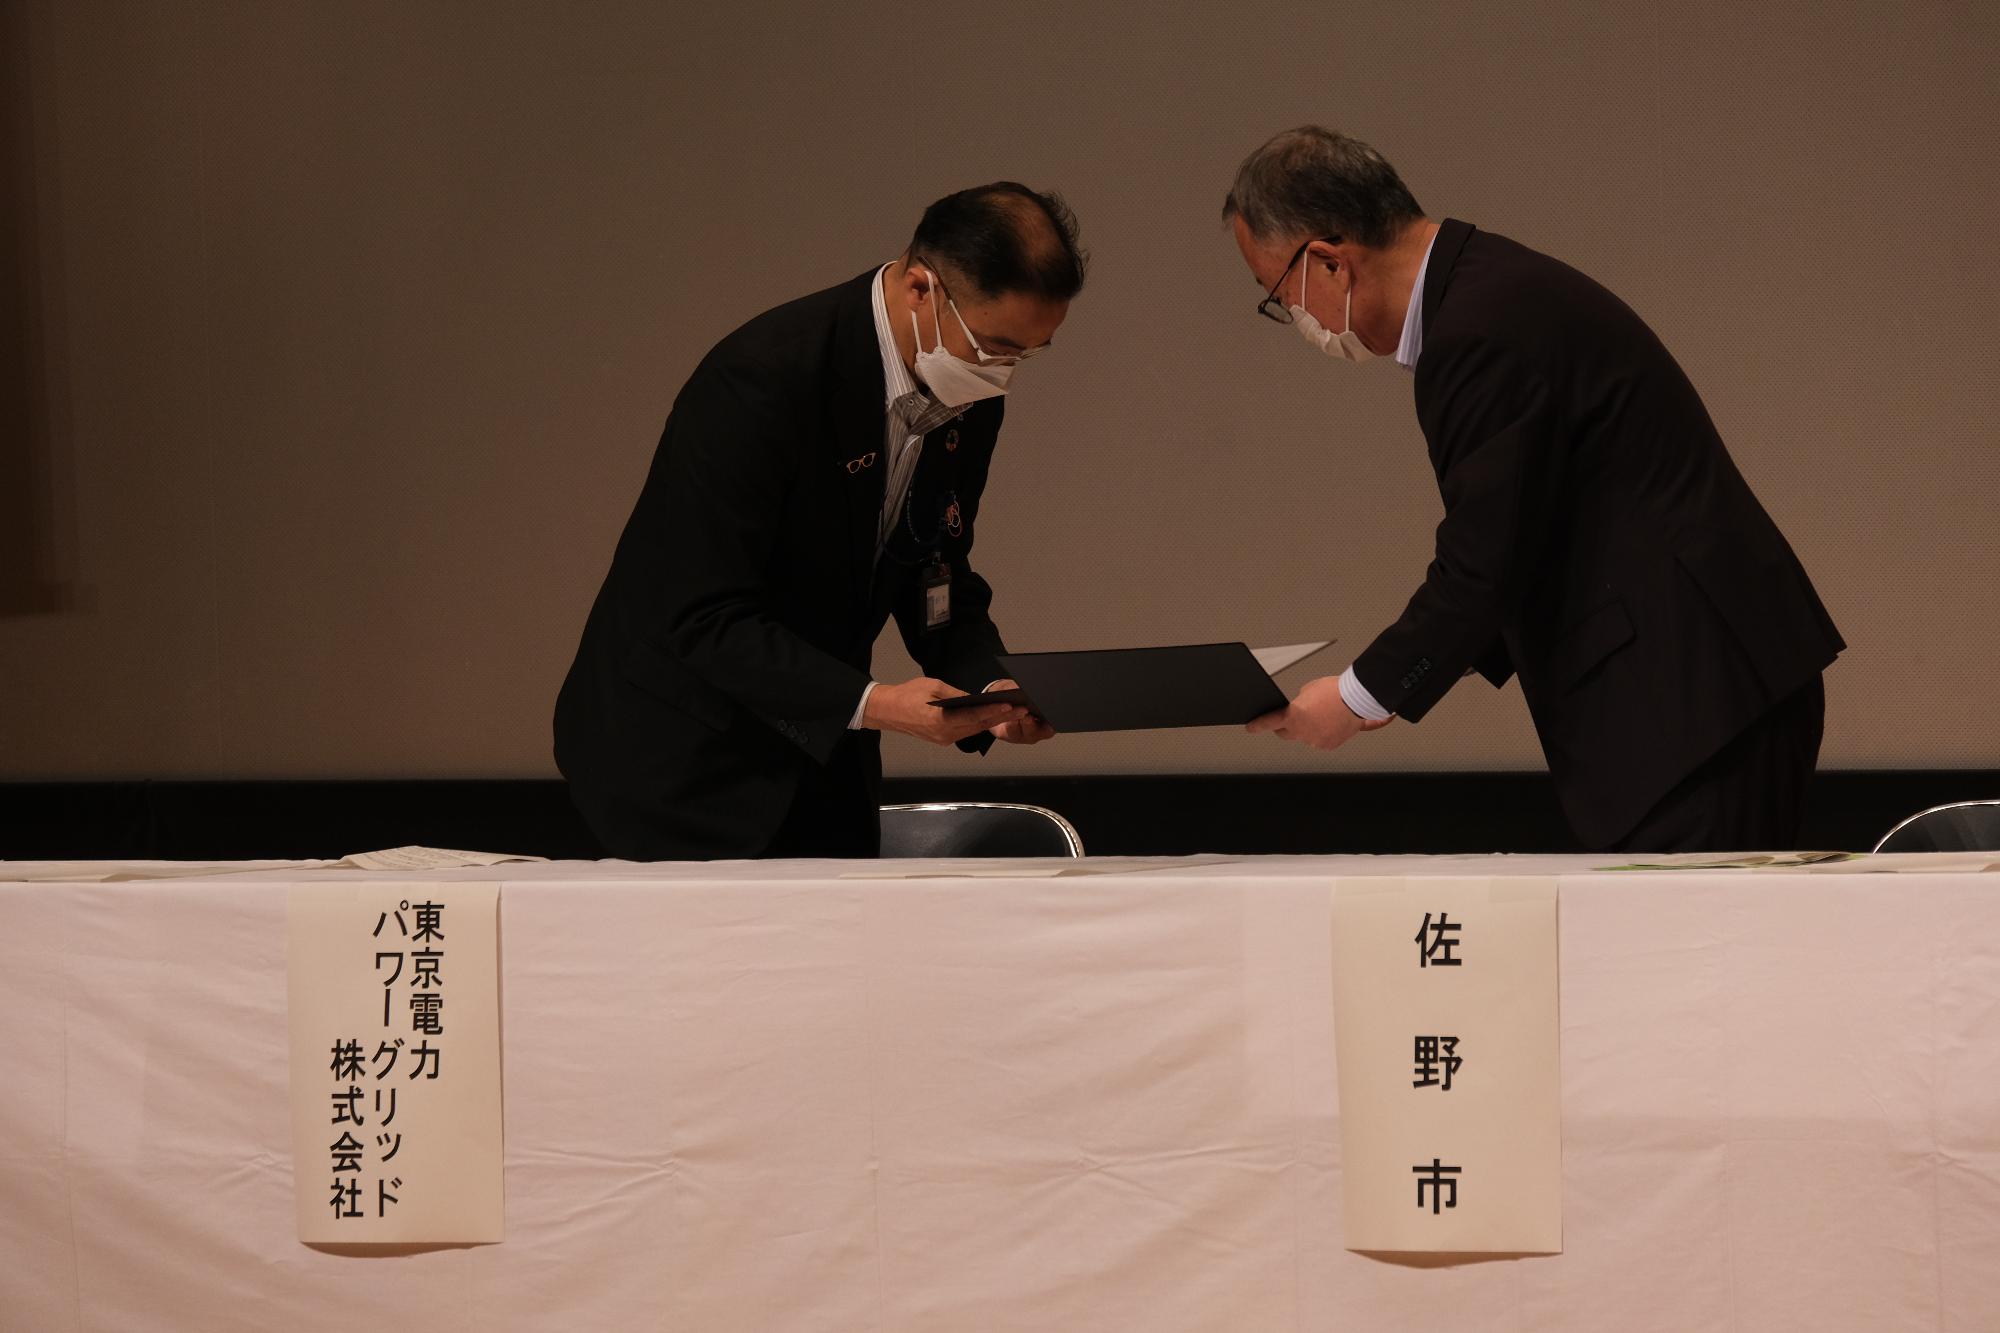 東京電力パワーグリッド株式会社との協定締結式にて協定書を取り交わす様子